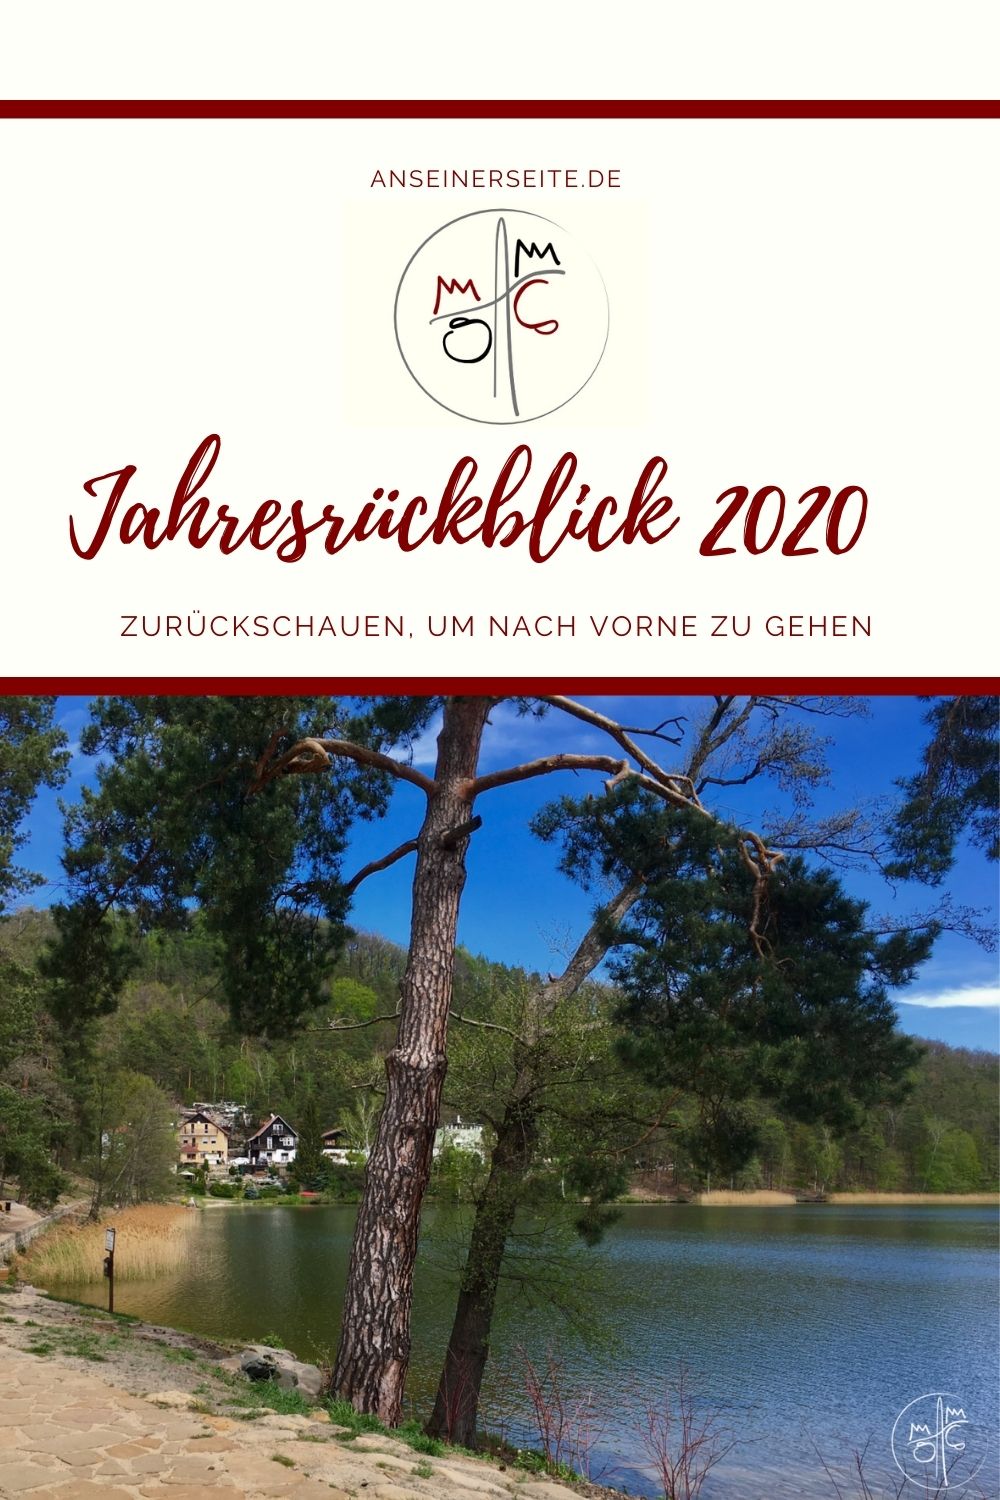 Jahresrückblick 2020 - Zurückschauen, um nach vorne zu gehen #jahresrückblick #evaluation #intentional I anseinerseite.de